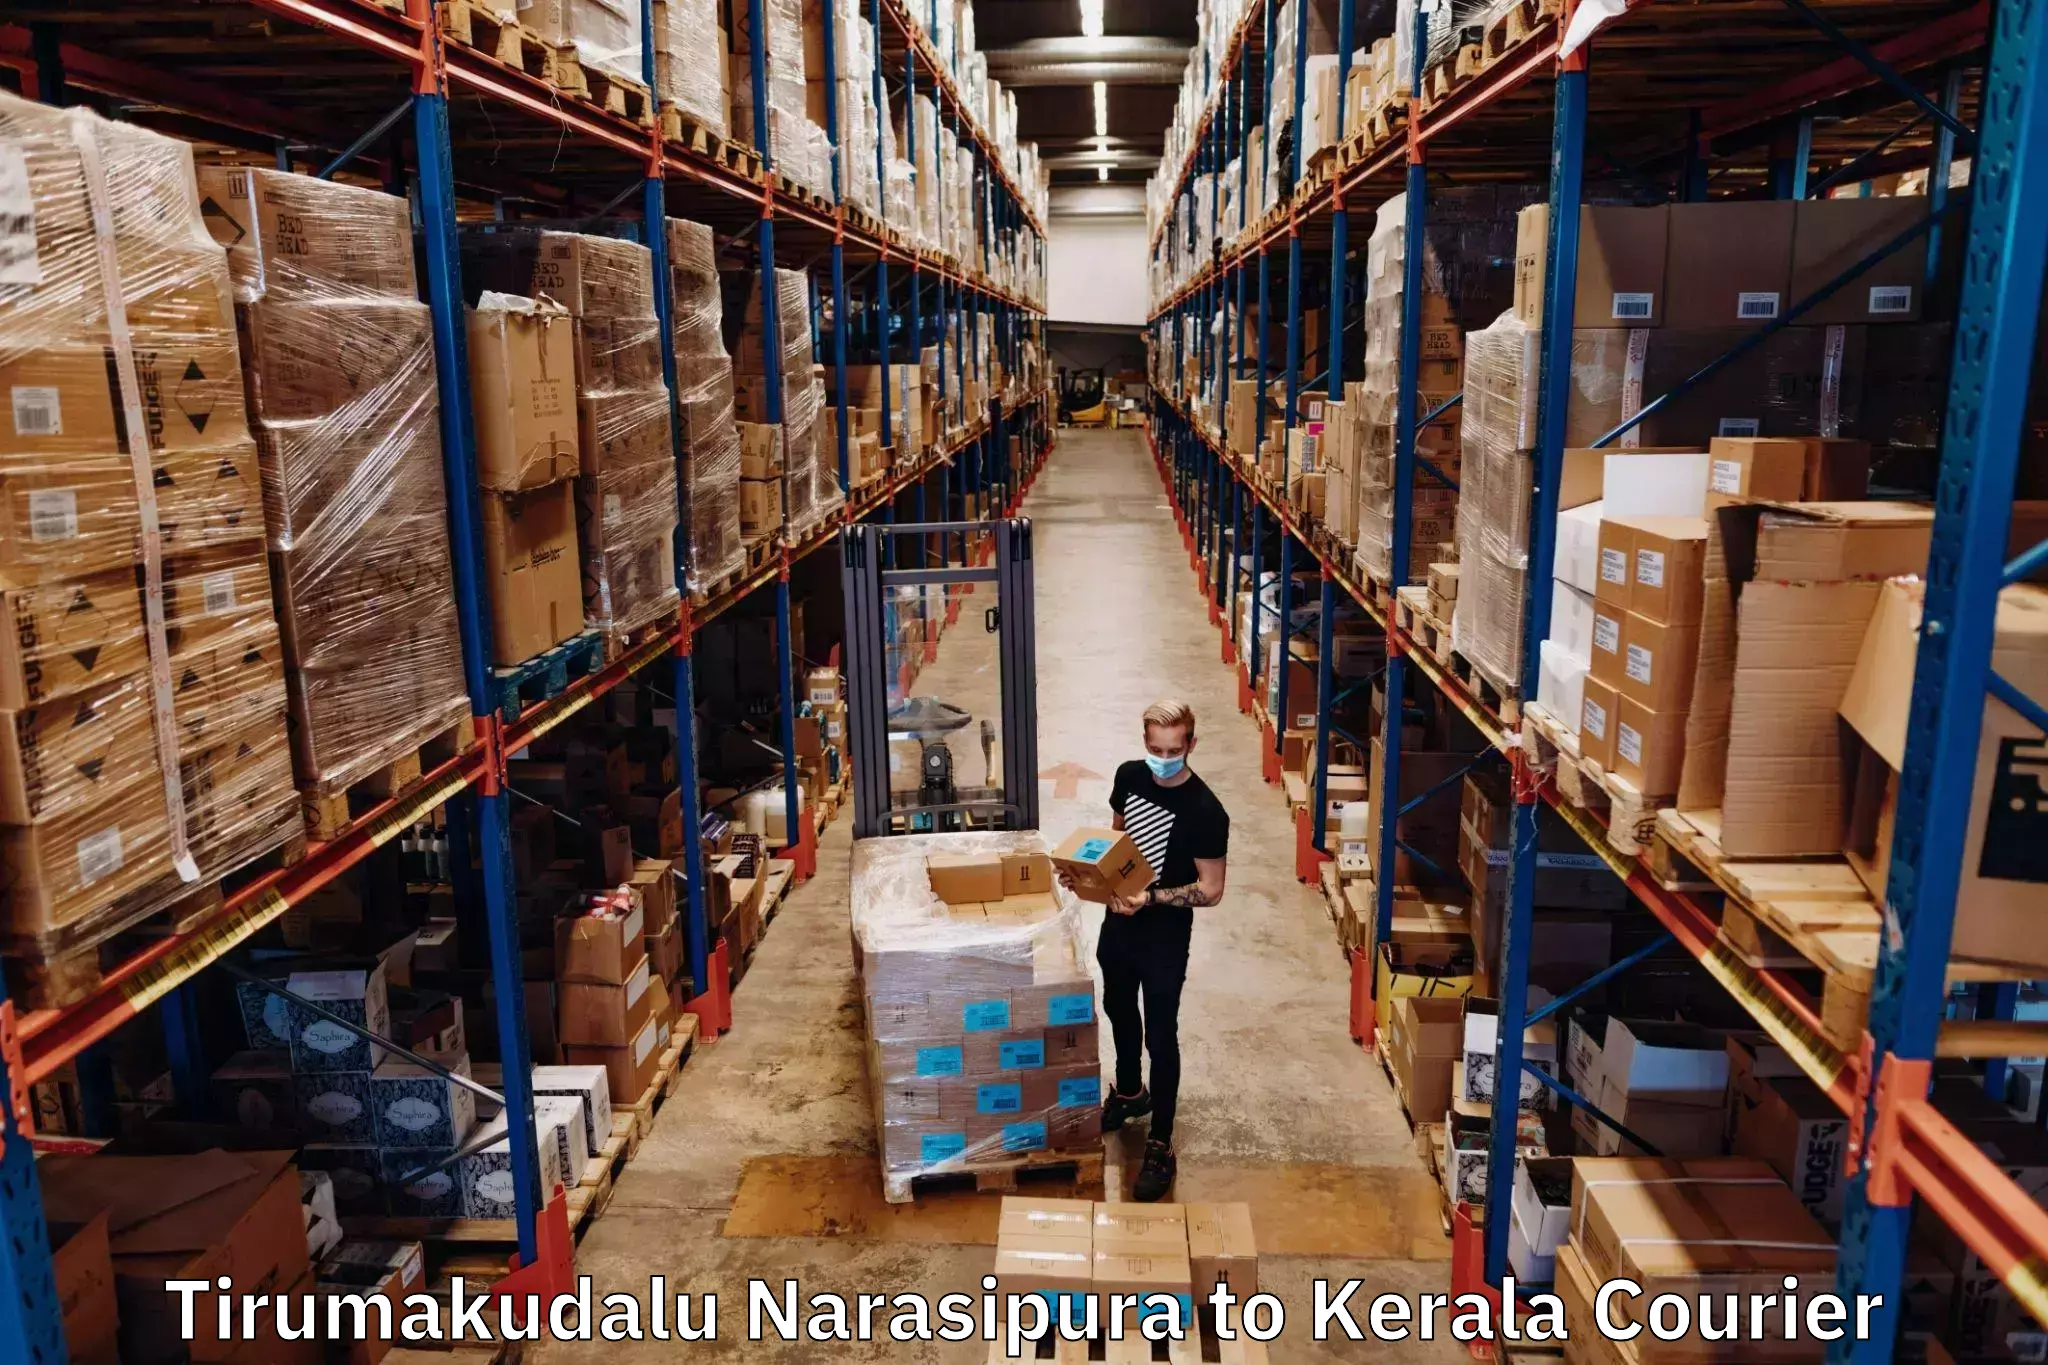 Express courier facilities Tirumakudalu Narasipura to Perumbavoor